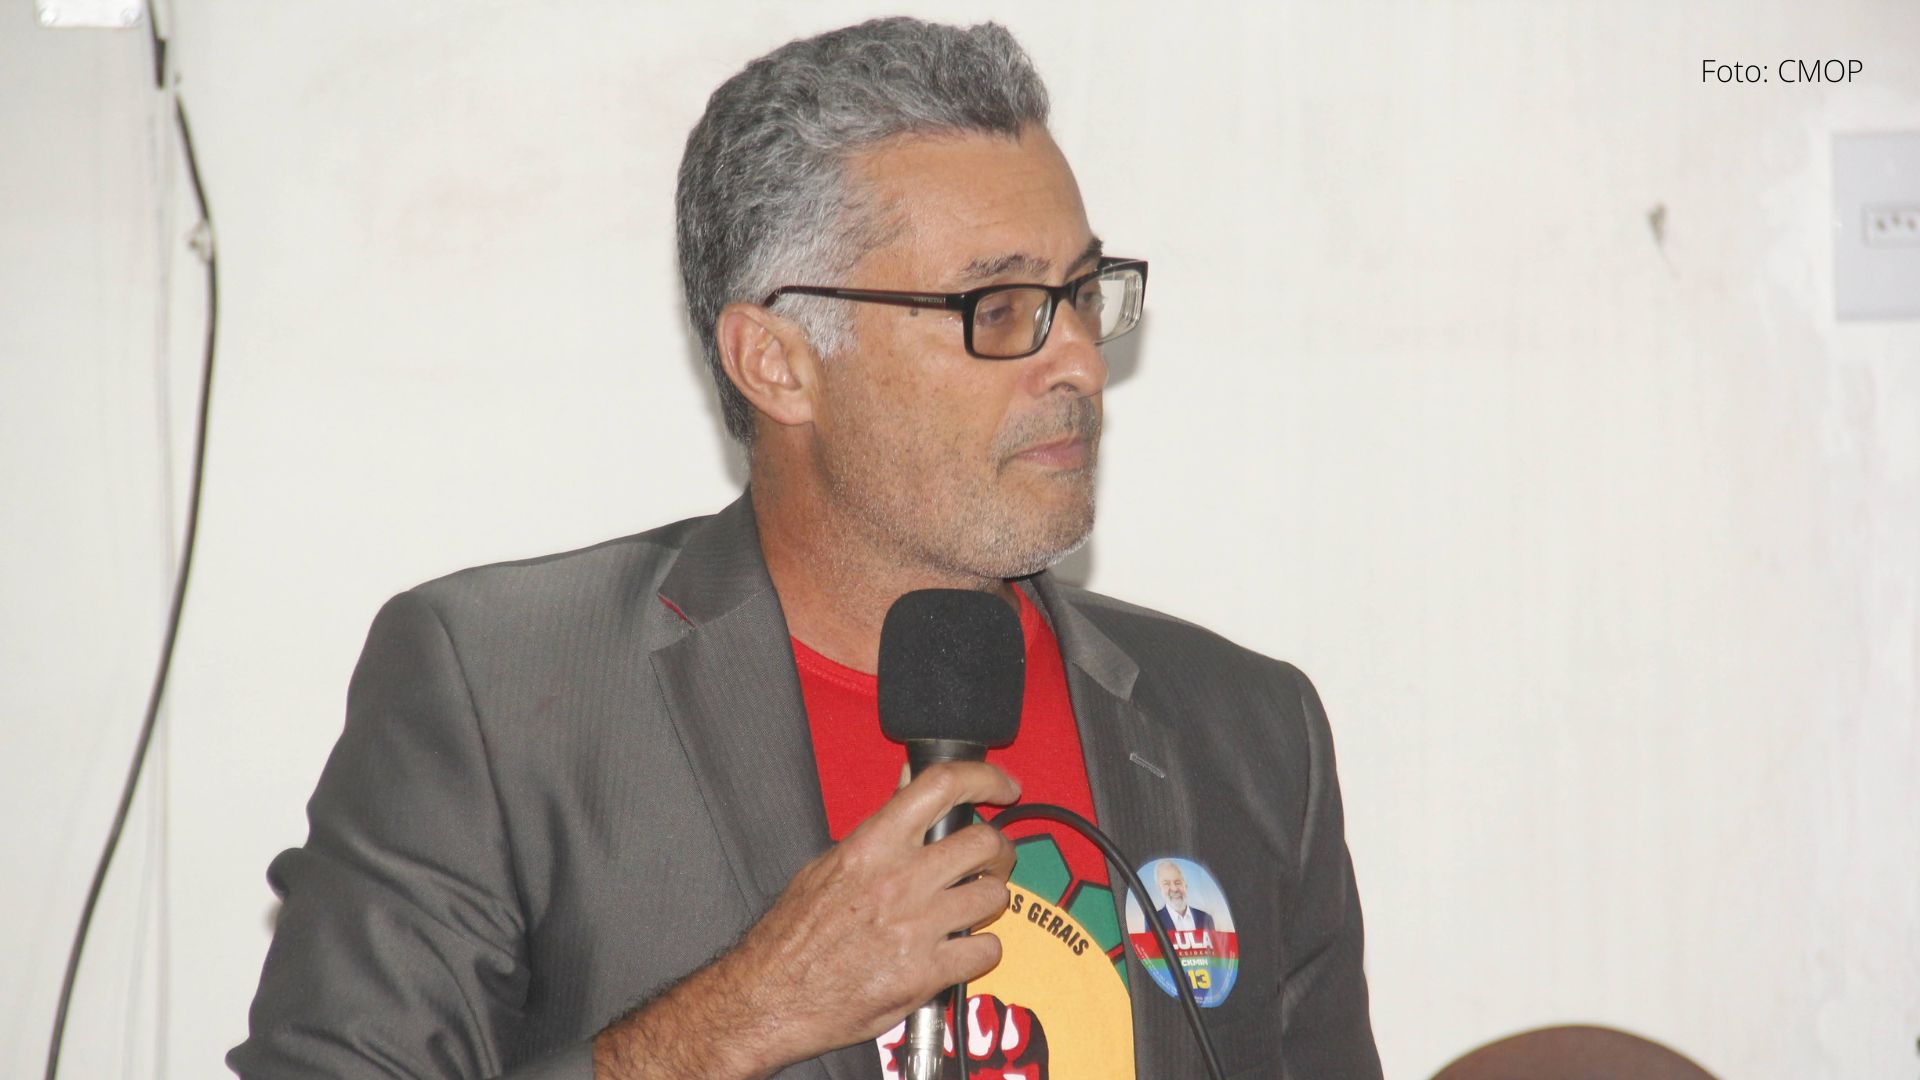 Vereador petista de Ouro Preto fala em "dar as mãos a bolsonaristas" para tirar Saneouro